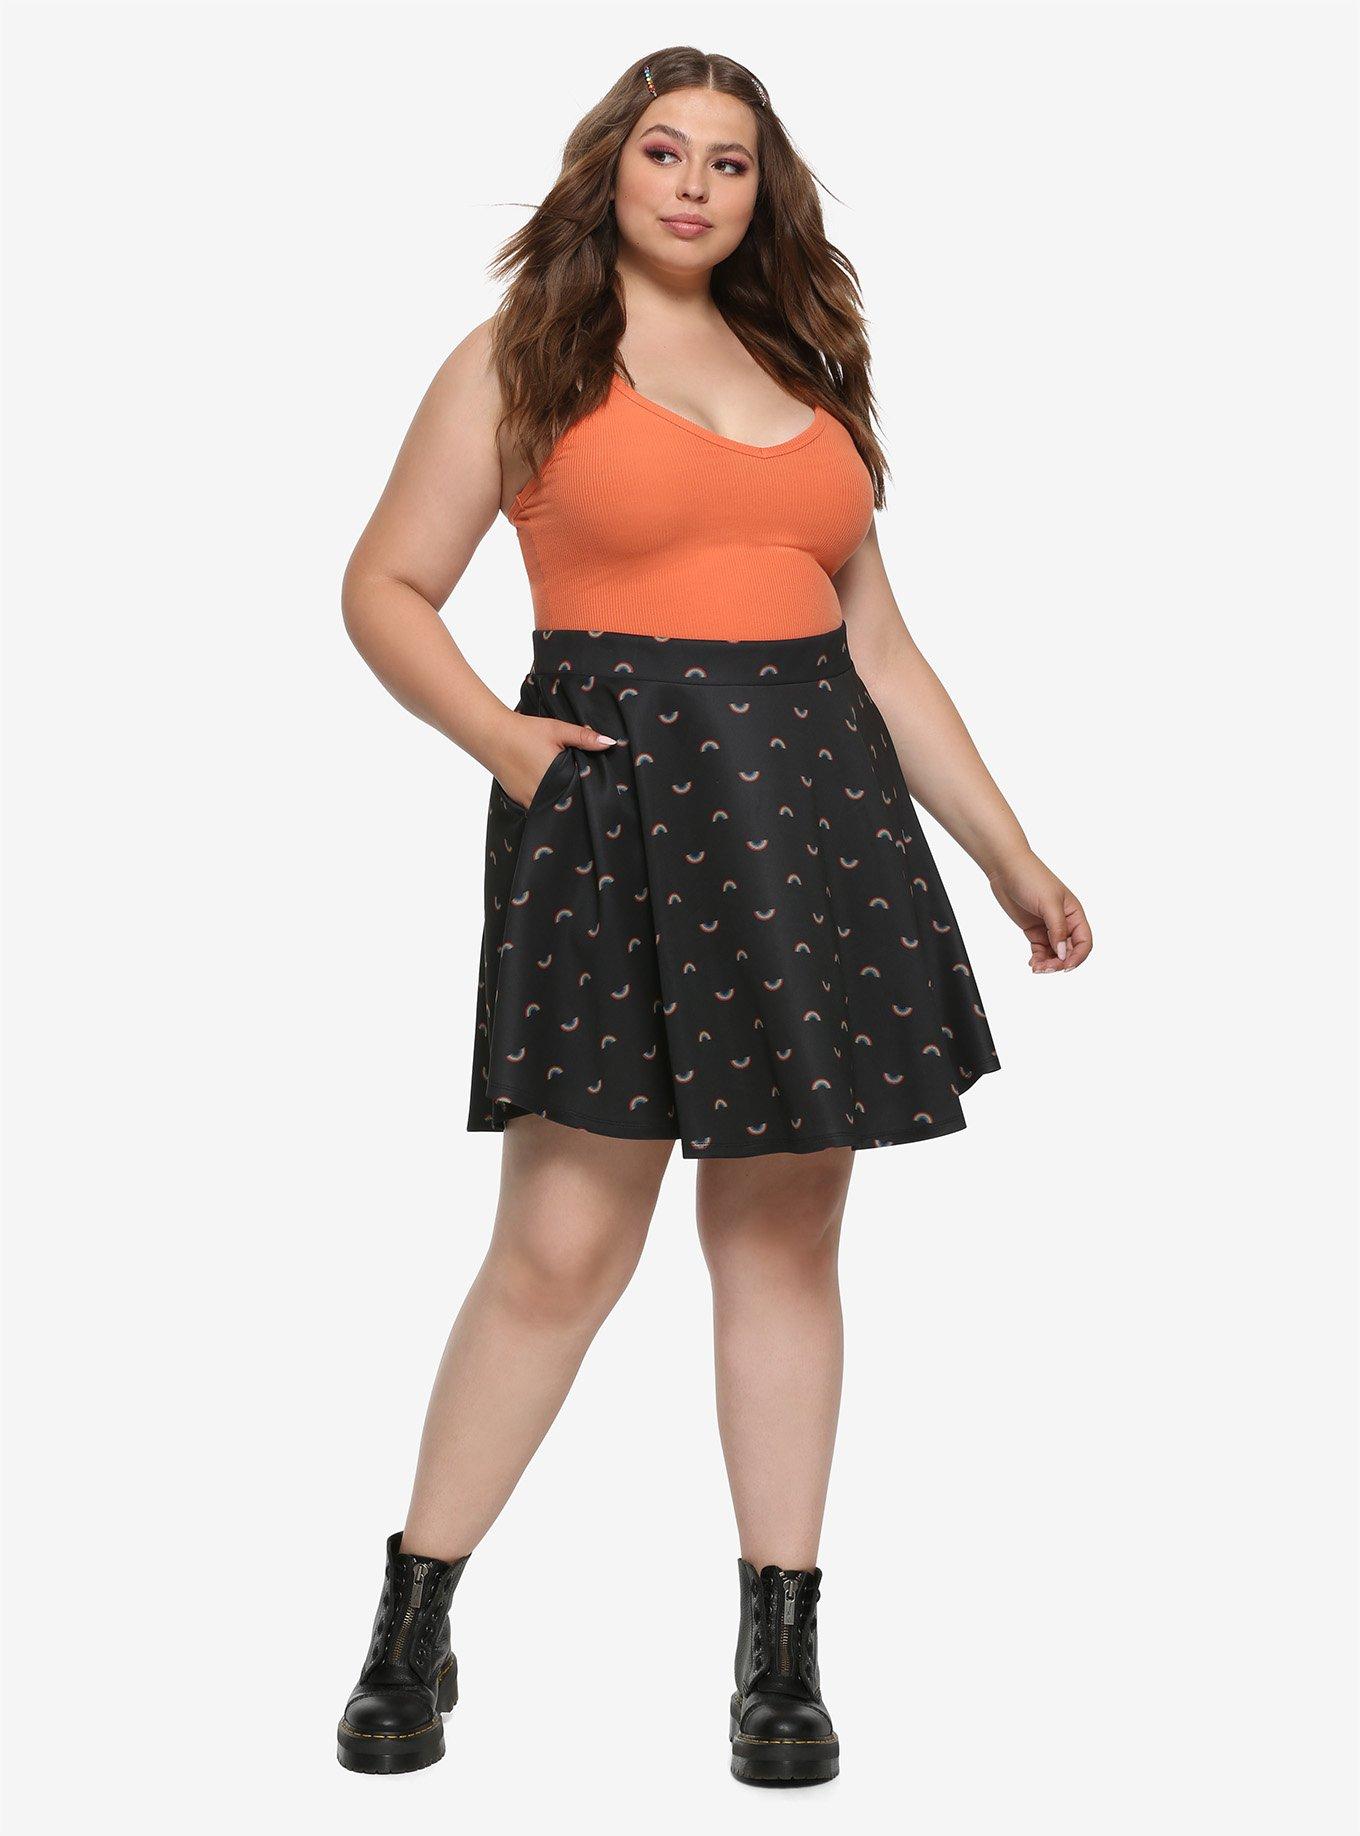 Rainbow Print Skater Skirt Plus Size, BLACK, alternate